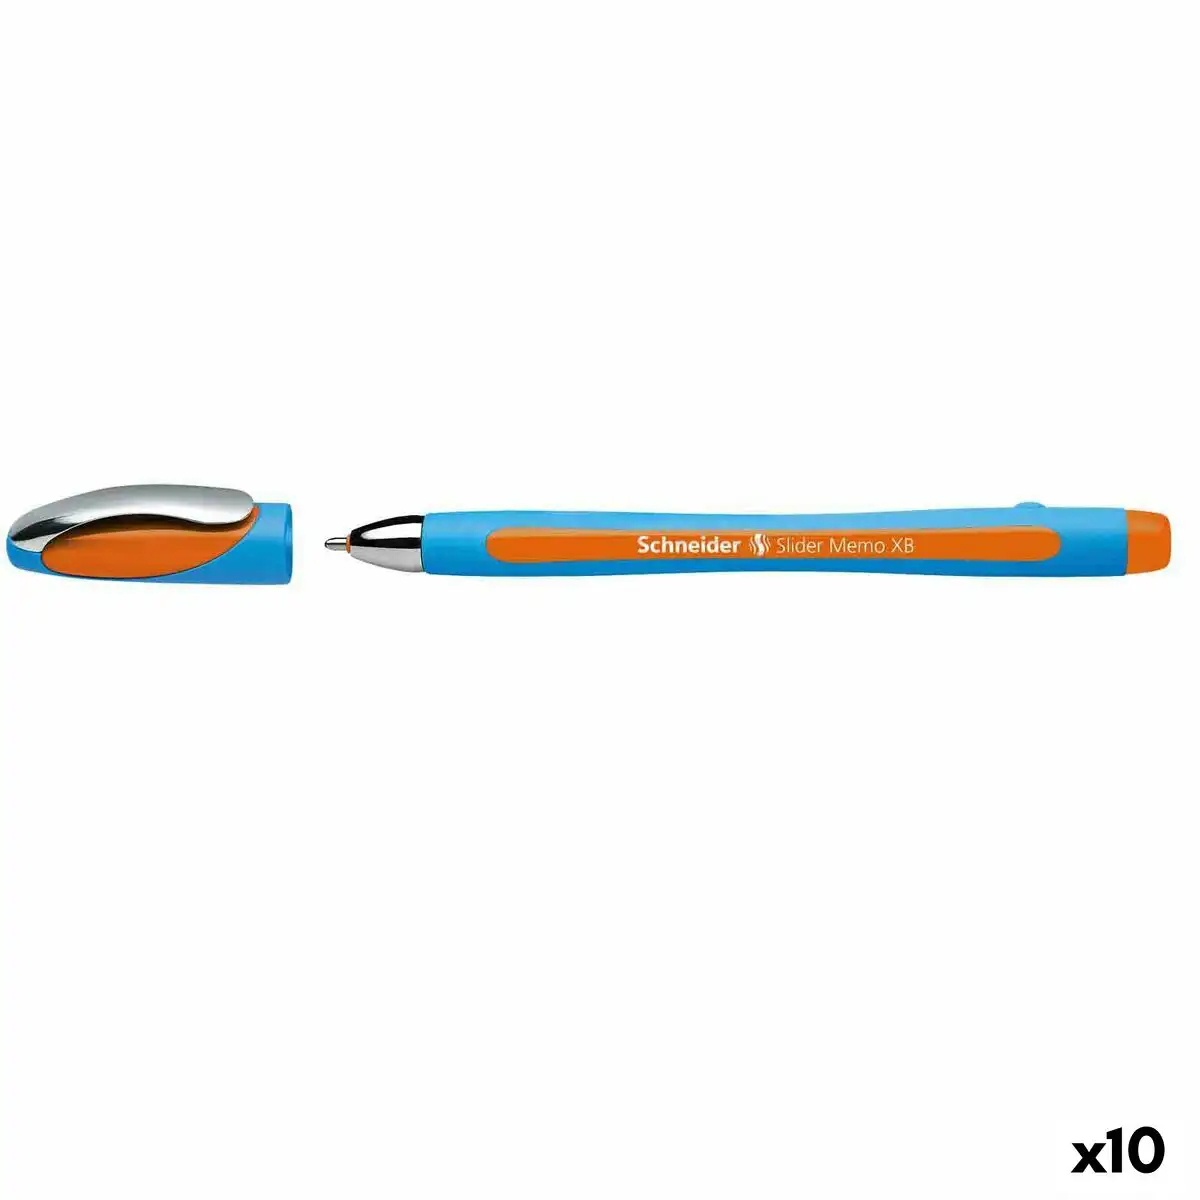 Crayon schneider slider memo xb orange caoutchouc 10 unites_2583. DIAYTAR SENEGAL - L'Art de Magasiner sans Limites. Naviguez à travers notre collection diversifiée pour trouver des produits qui élargiront vos horizons shopping.